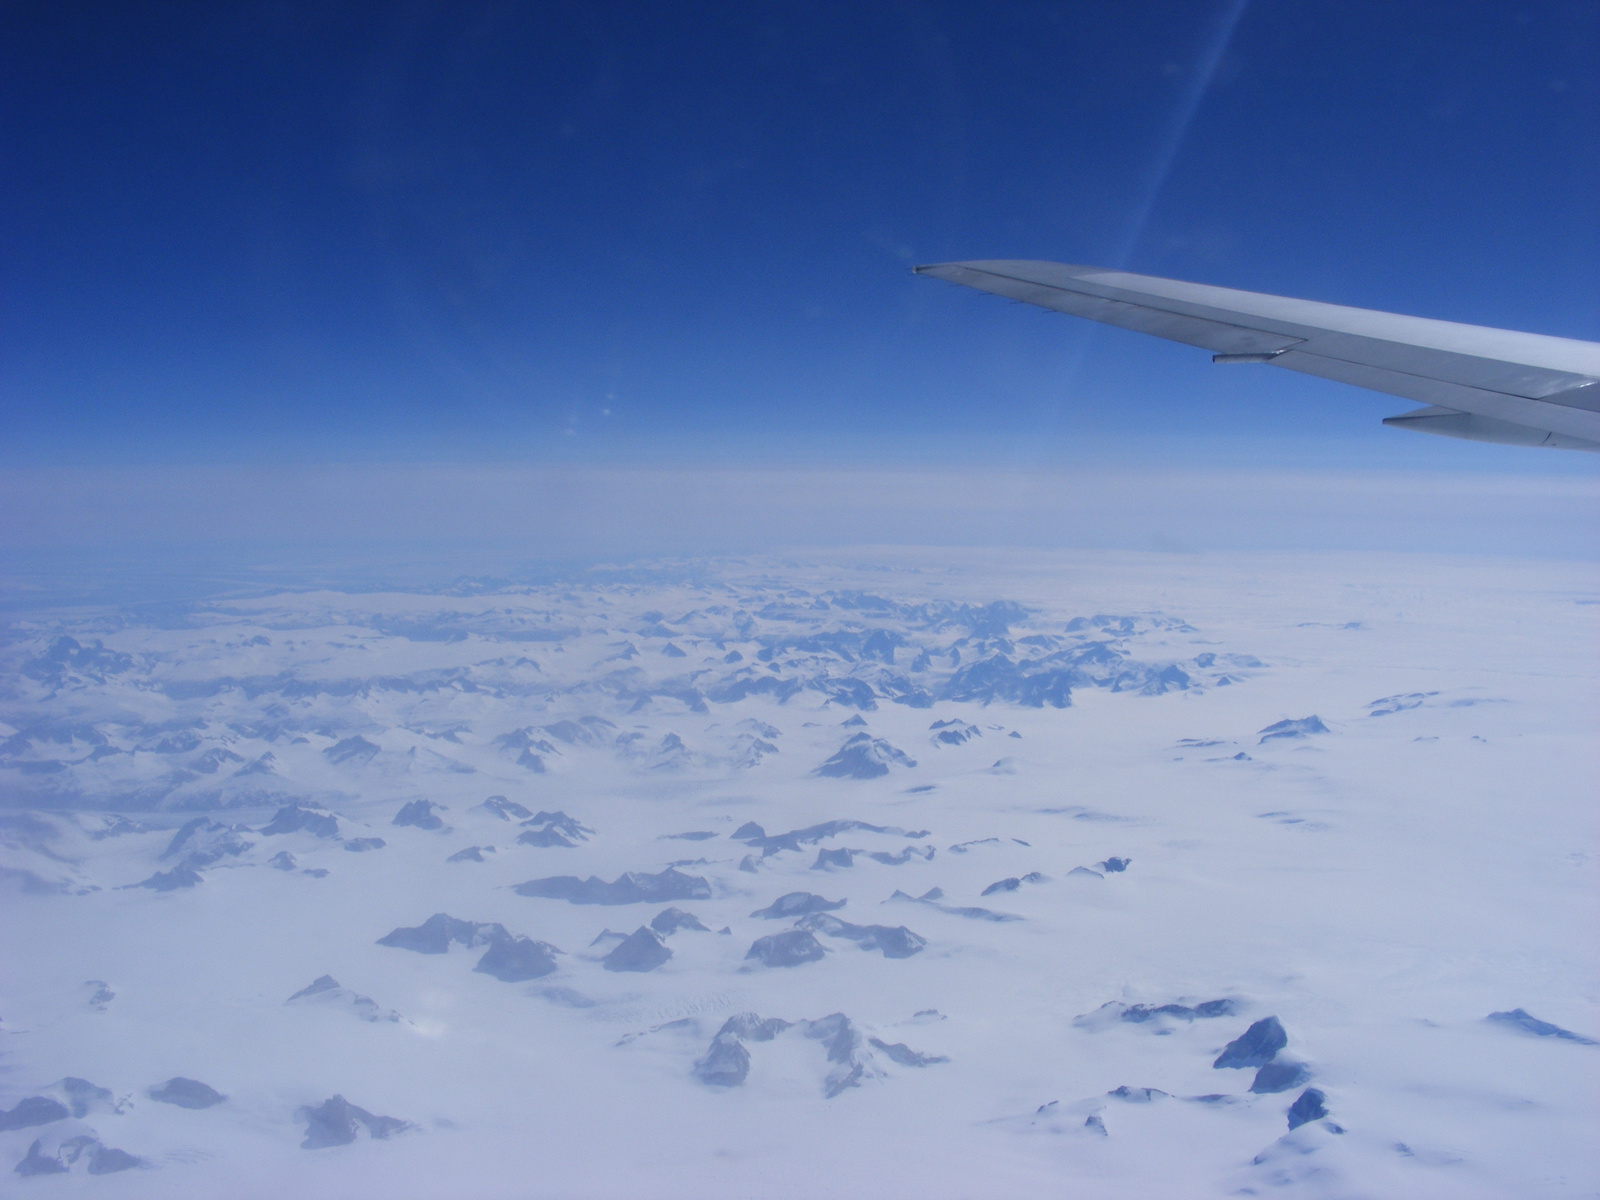 Grönland fentről